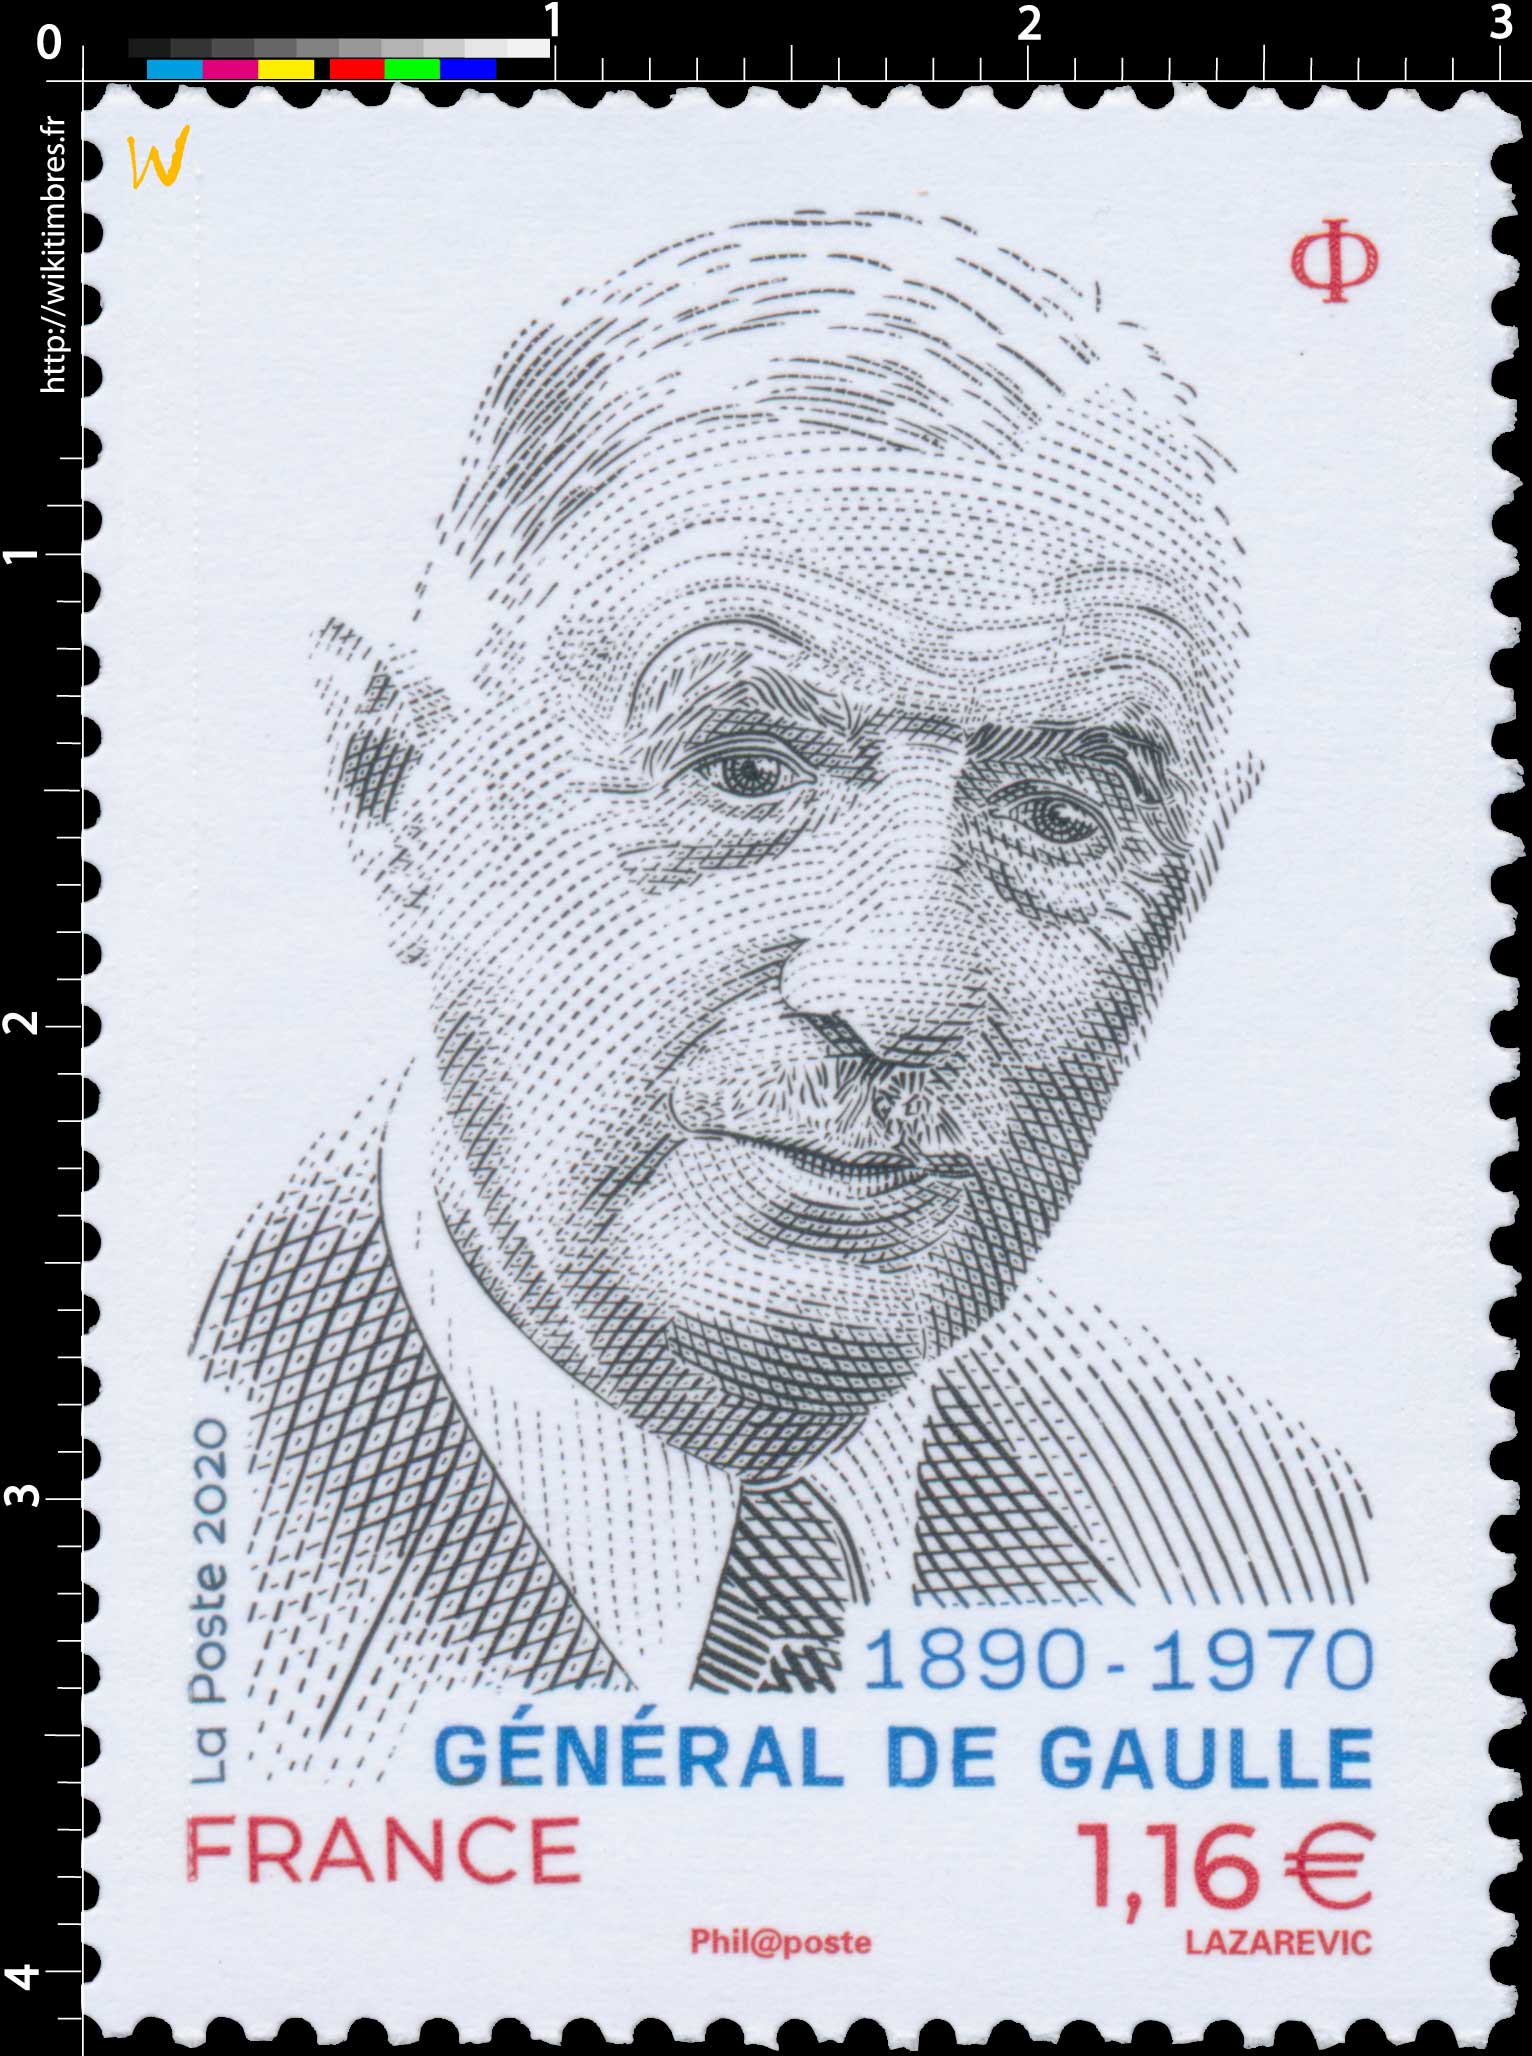 2020 GENERAL DE GAULLE 1890 - 1970